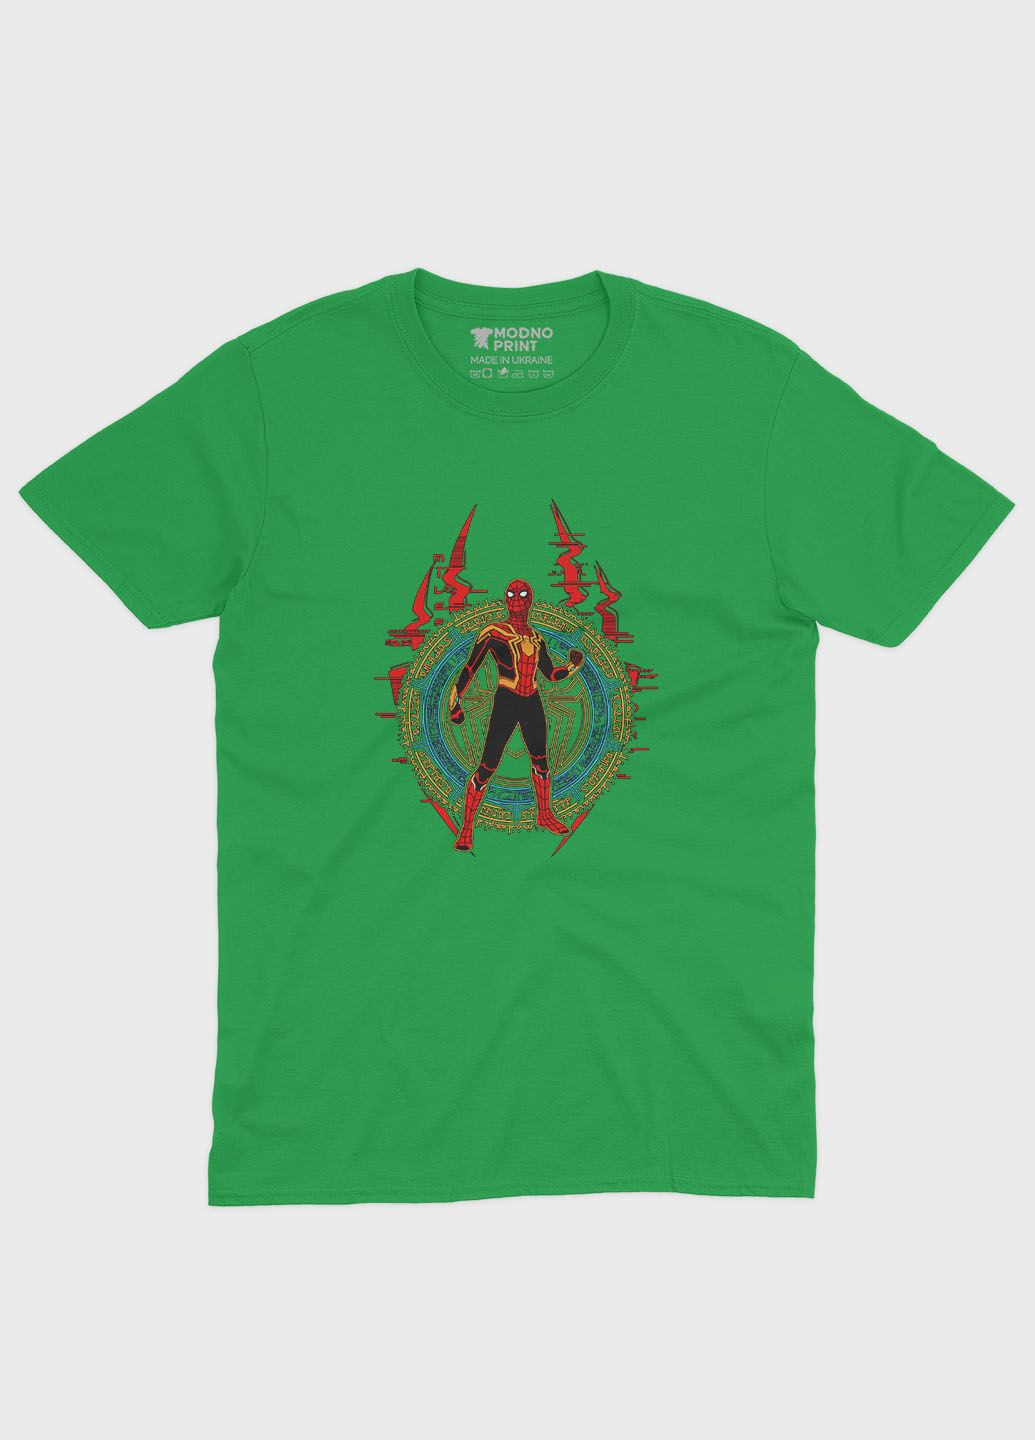 Зелена демісезонна футболка для хлопчика з принтом супергероя - людина-павук (ts001-1-keg-006-014-011-b) Modno